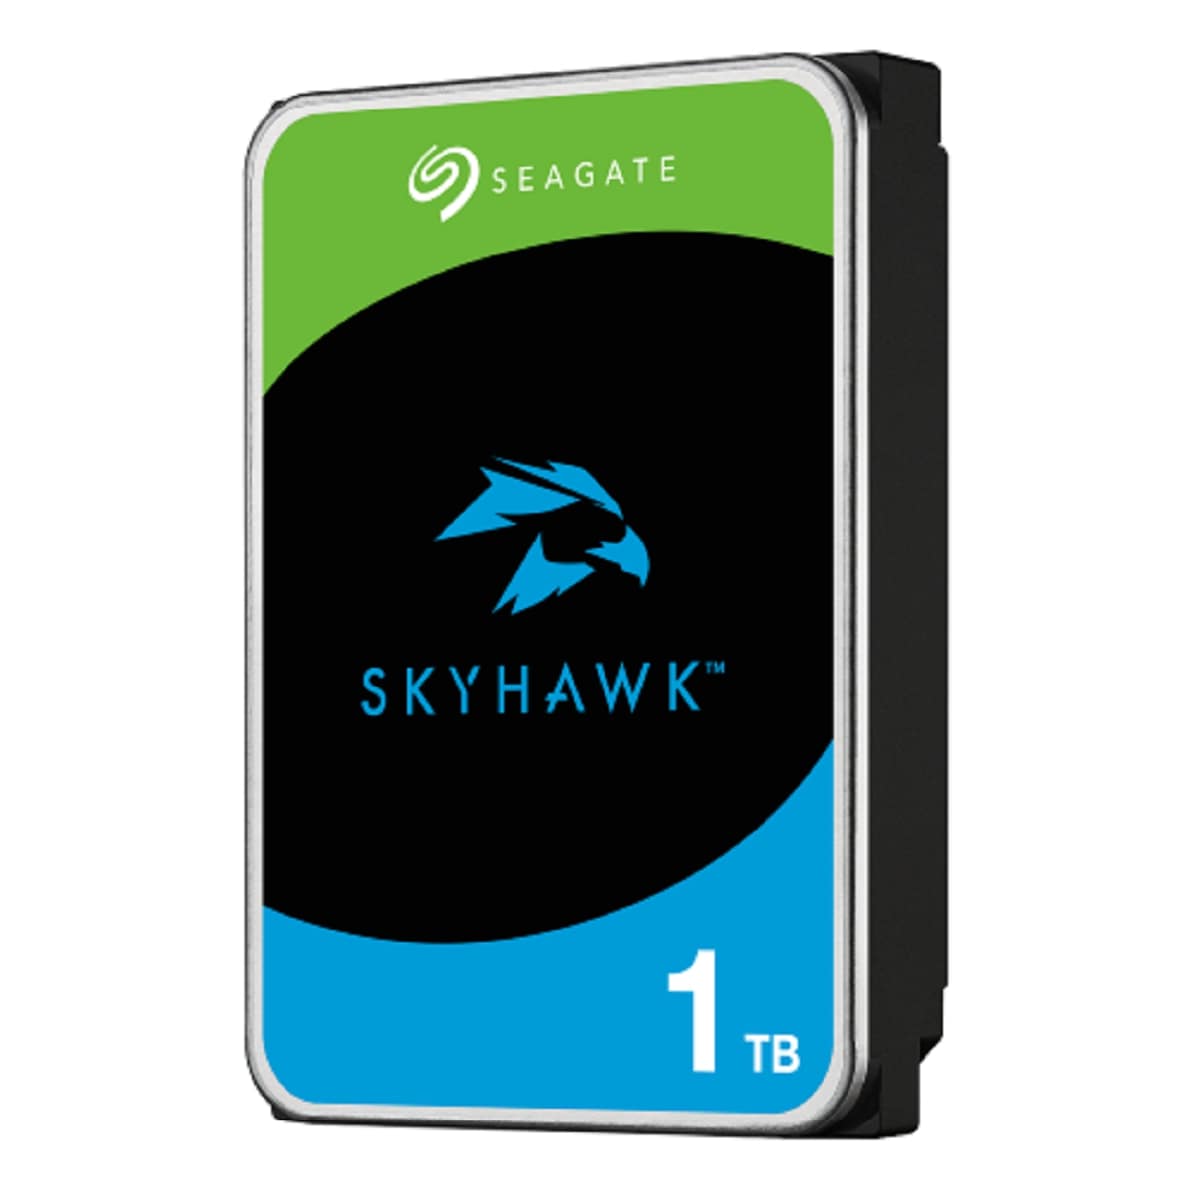 Seagate ST1000VX013 SkyHawk 1TB SATA Hard Drive